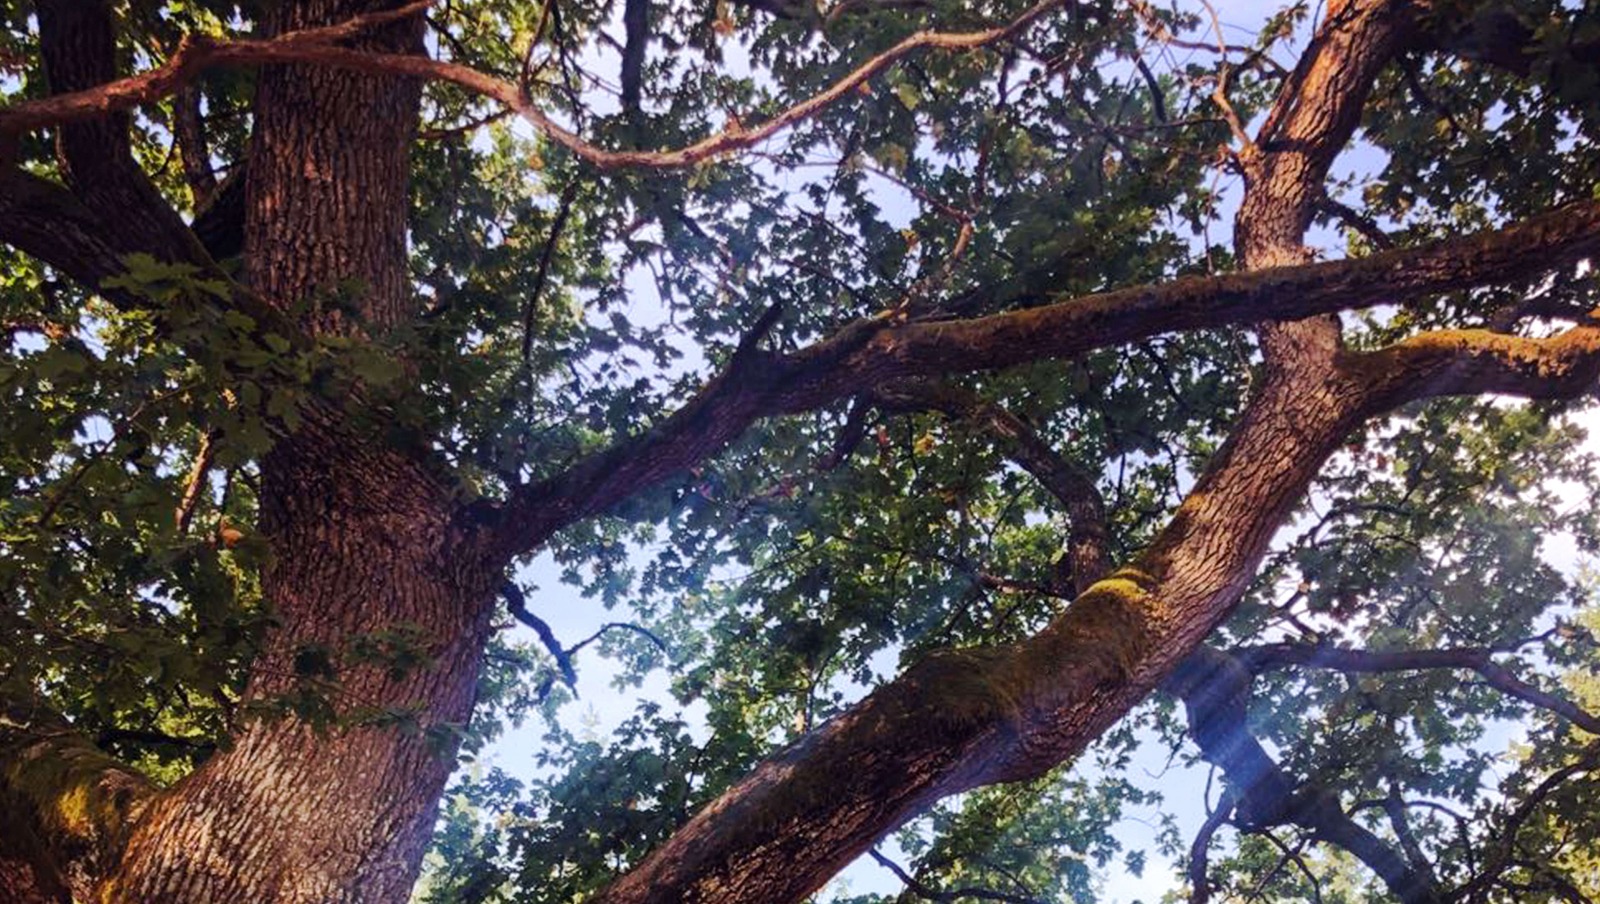 Tammen latinankielinen nimi, Quercus robur, huokuu voimaa ja jyhkeyttä. Tammi voikin kasvaa jopa 30 metriä korkeaksi ja 1,5 metriä paksuksi.